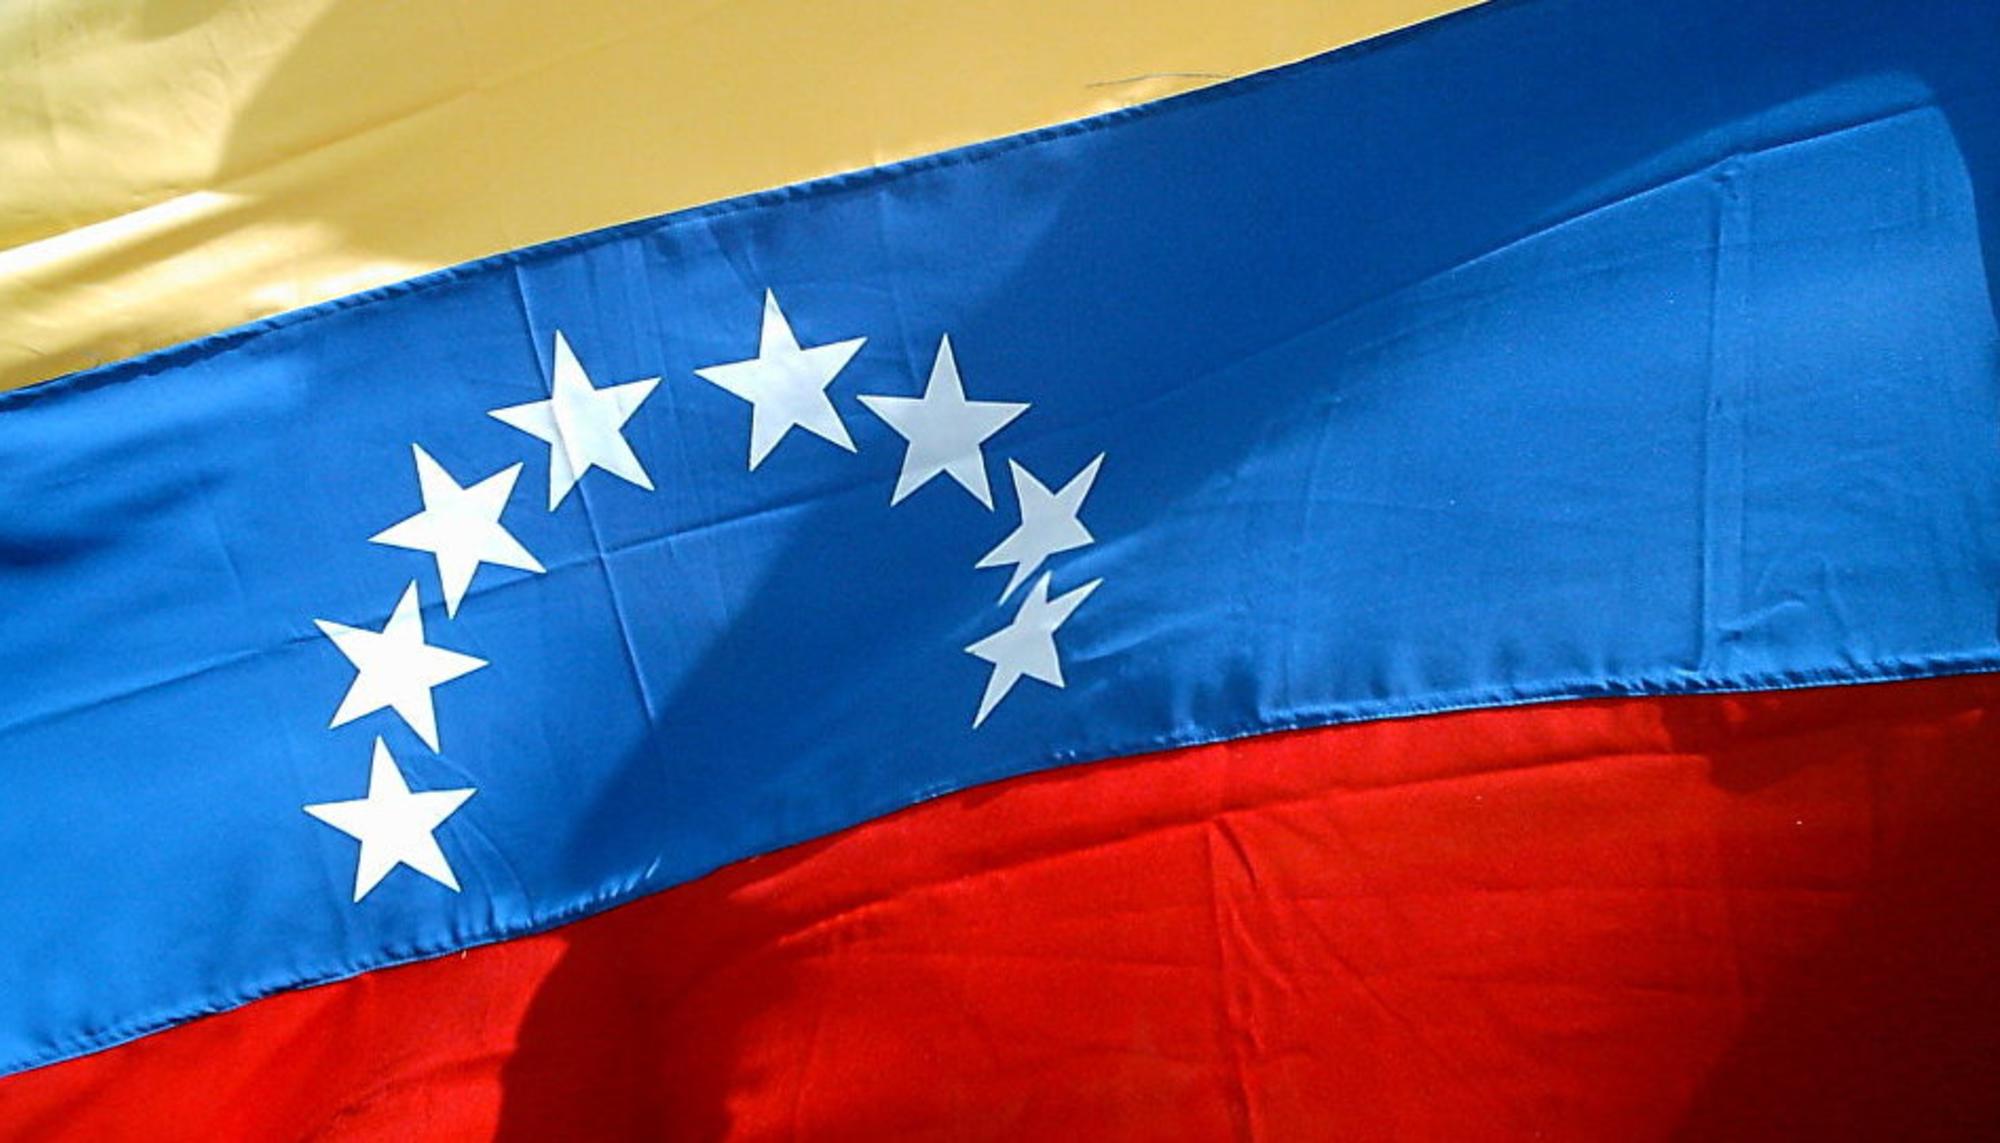 Bandera de venezuela